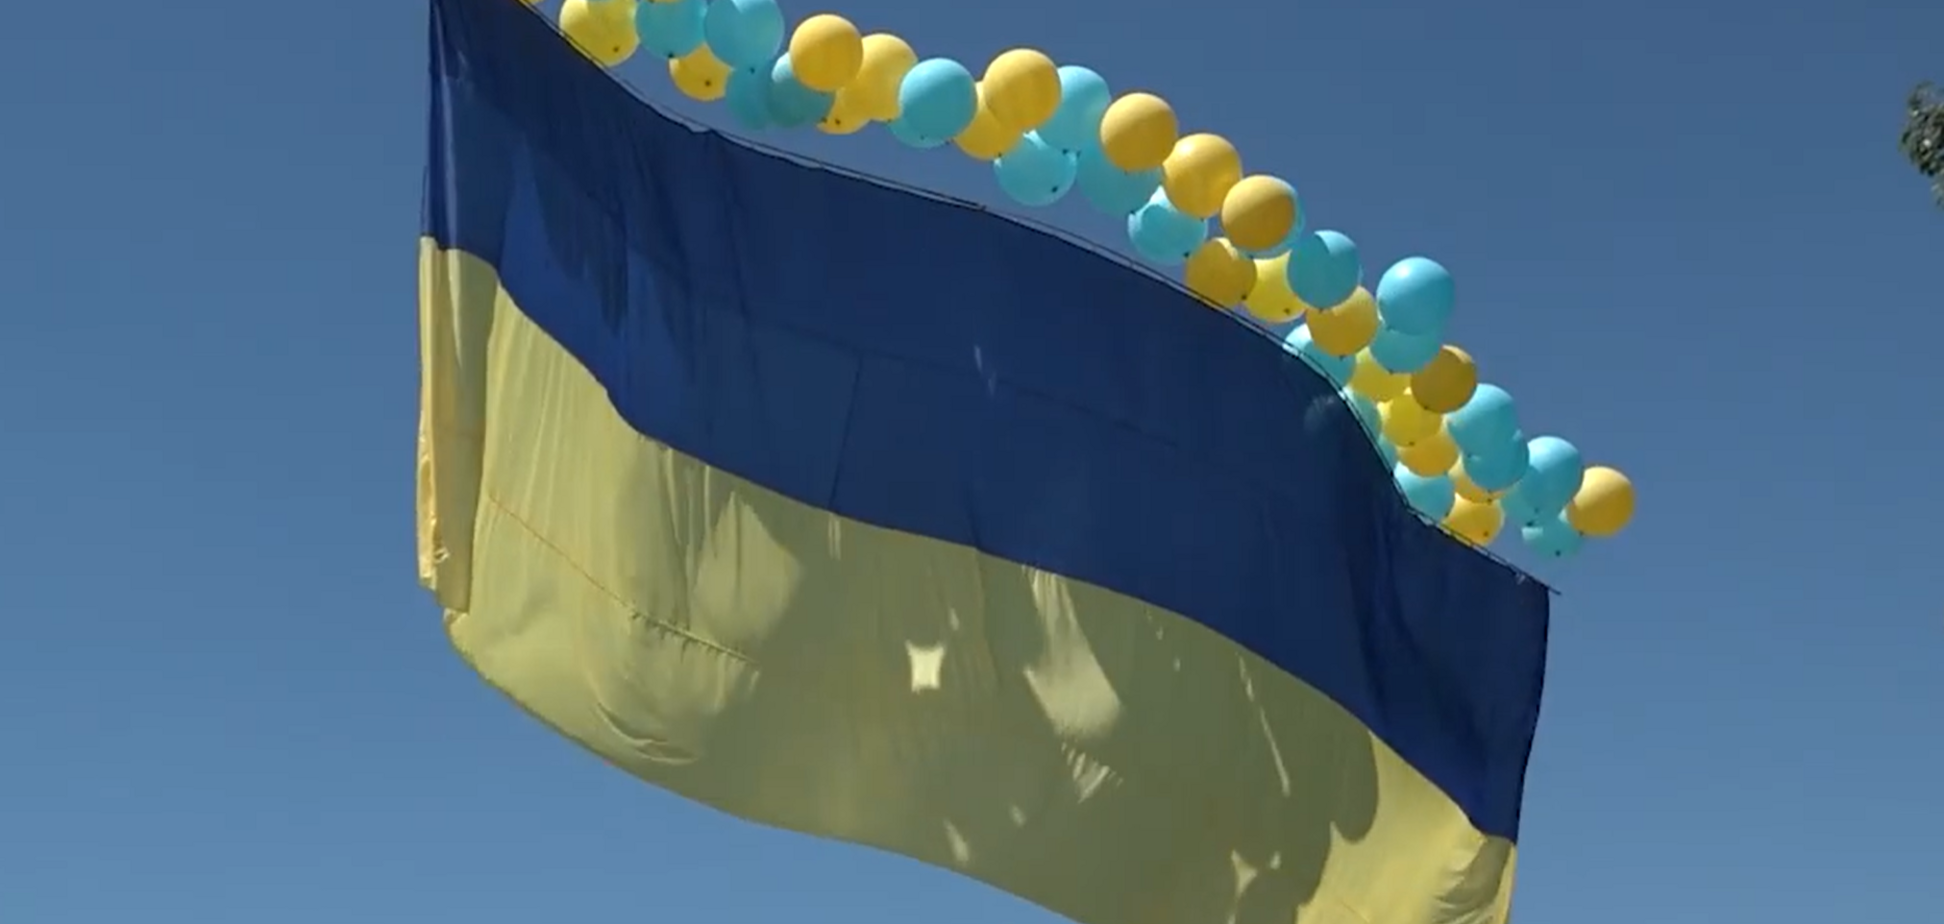 У бік окупованого Донецька запустили 15-метровий прапор України